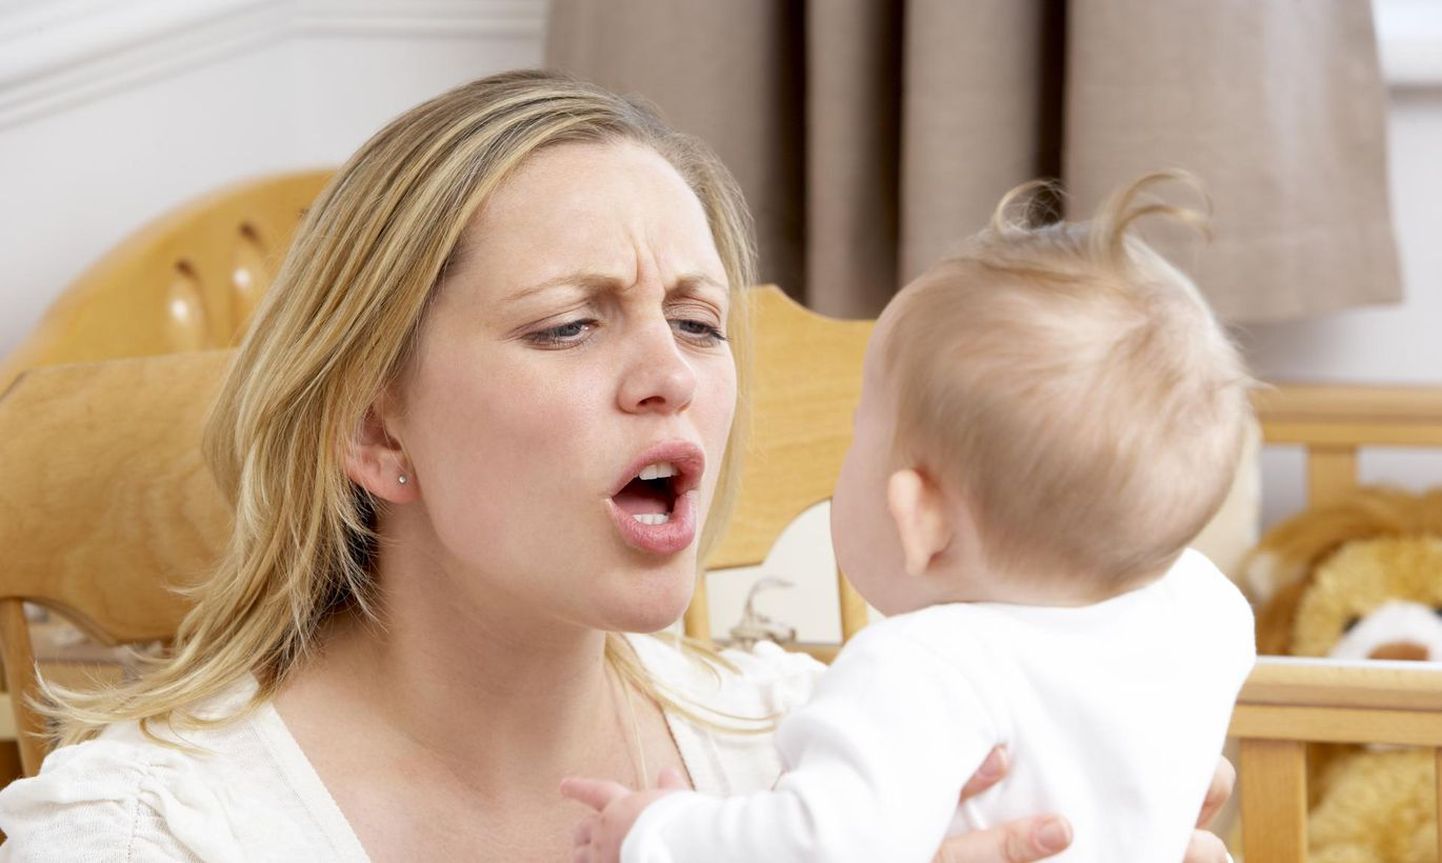 Попытки успокоить плачущего ребенка резкими движениями и тряской могут привести к возникновению синдрома детского сотрясения.